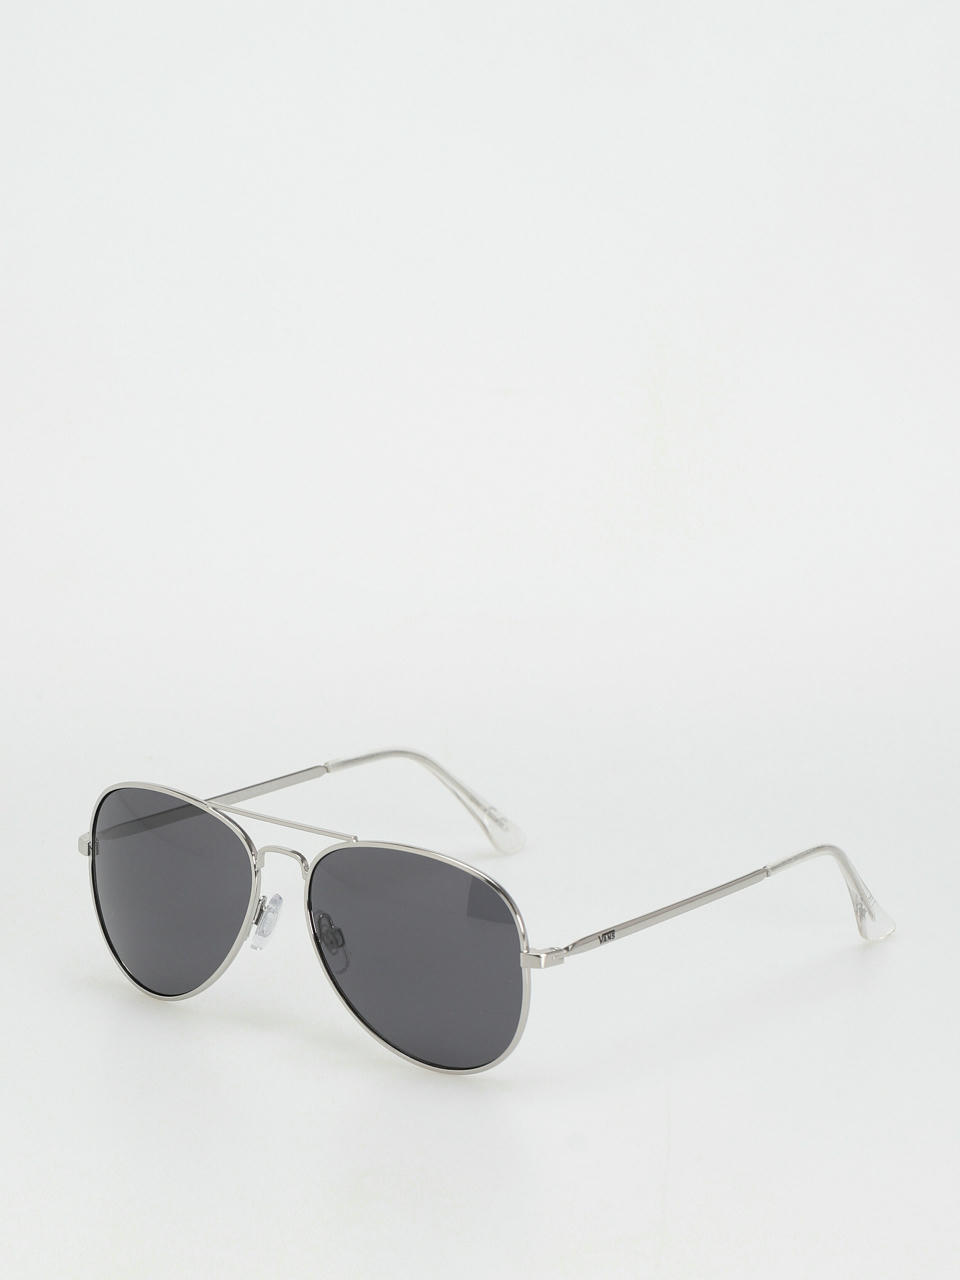 II Henderson Sunglasses Vans (silver)